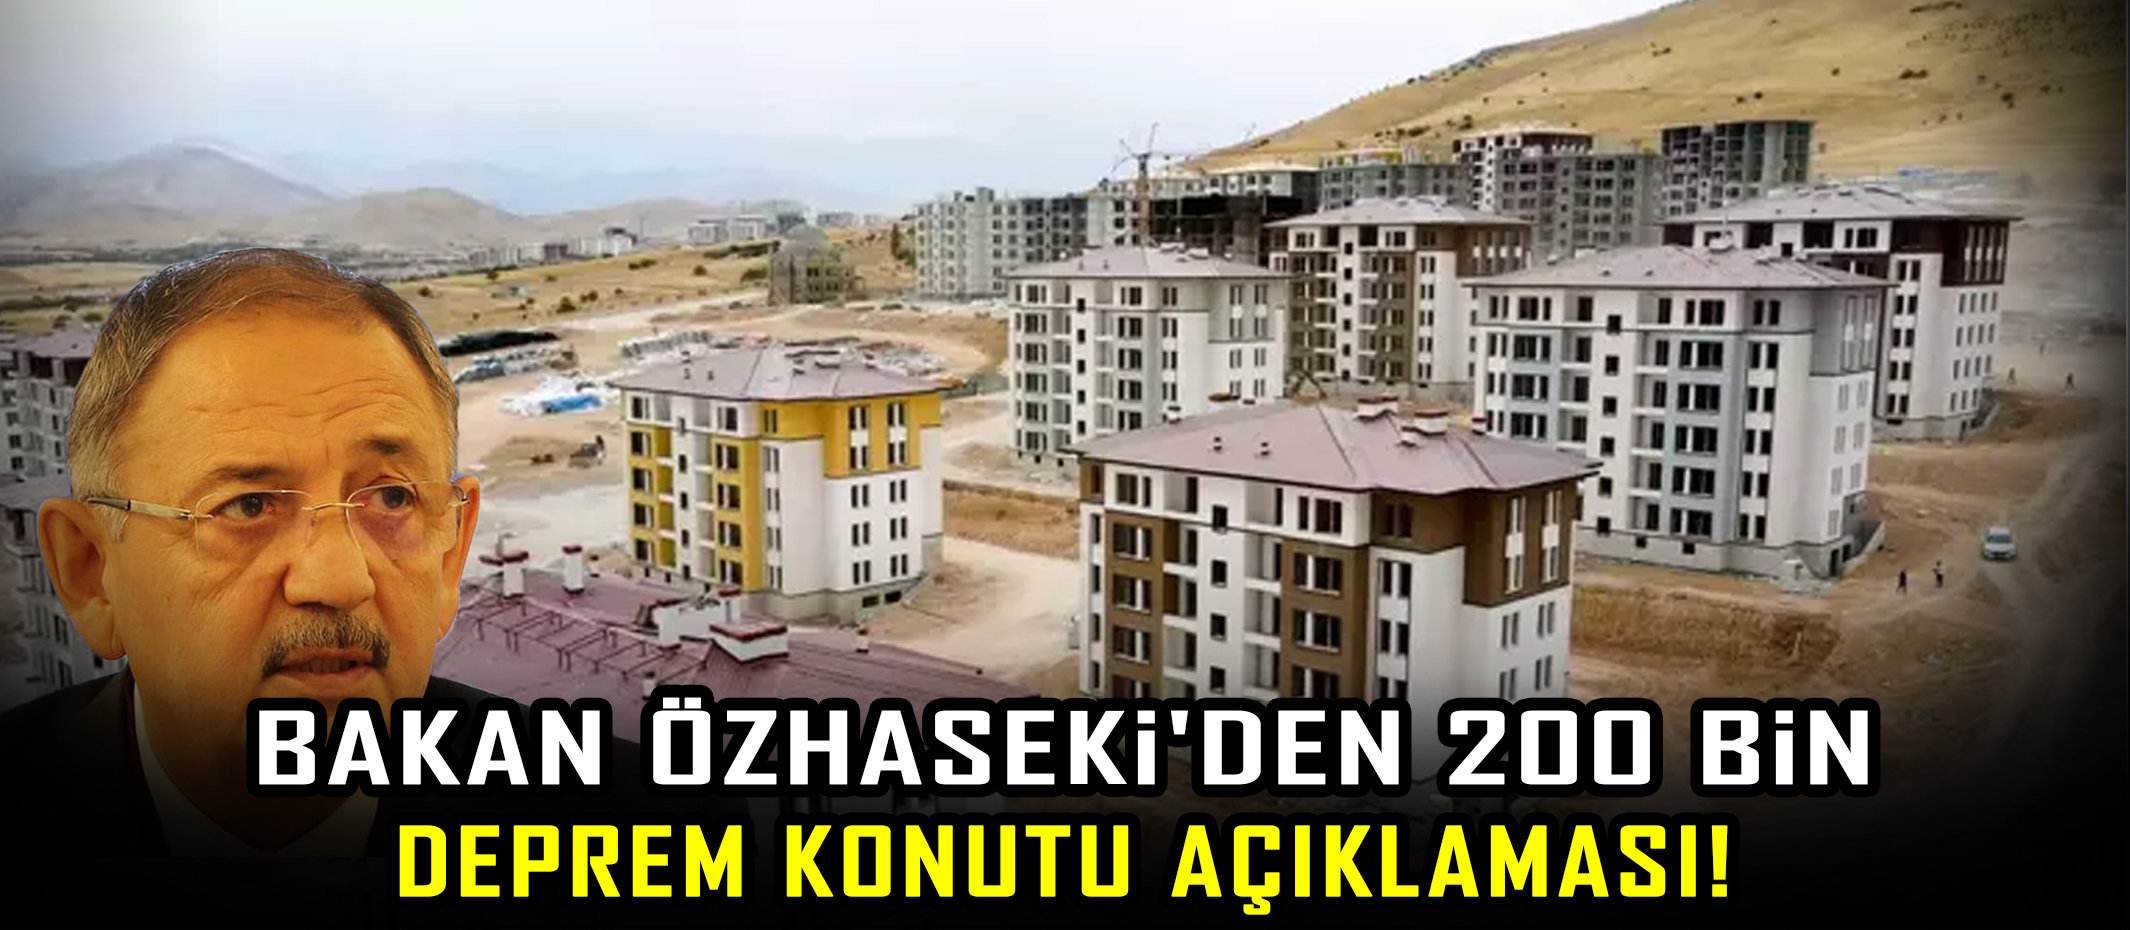 Bakan Özhaseki'den deprem konutu açıklaması!